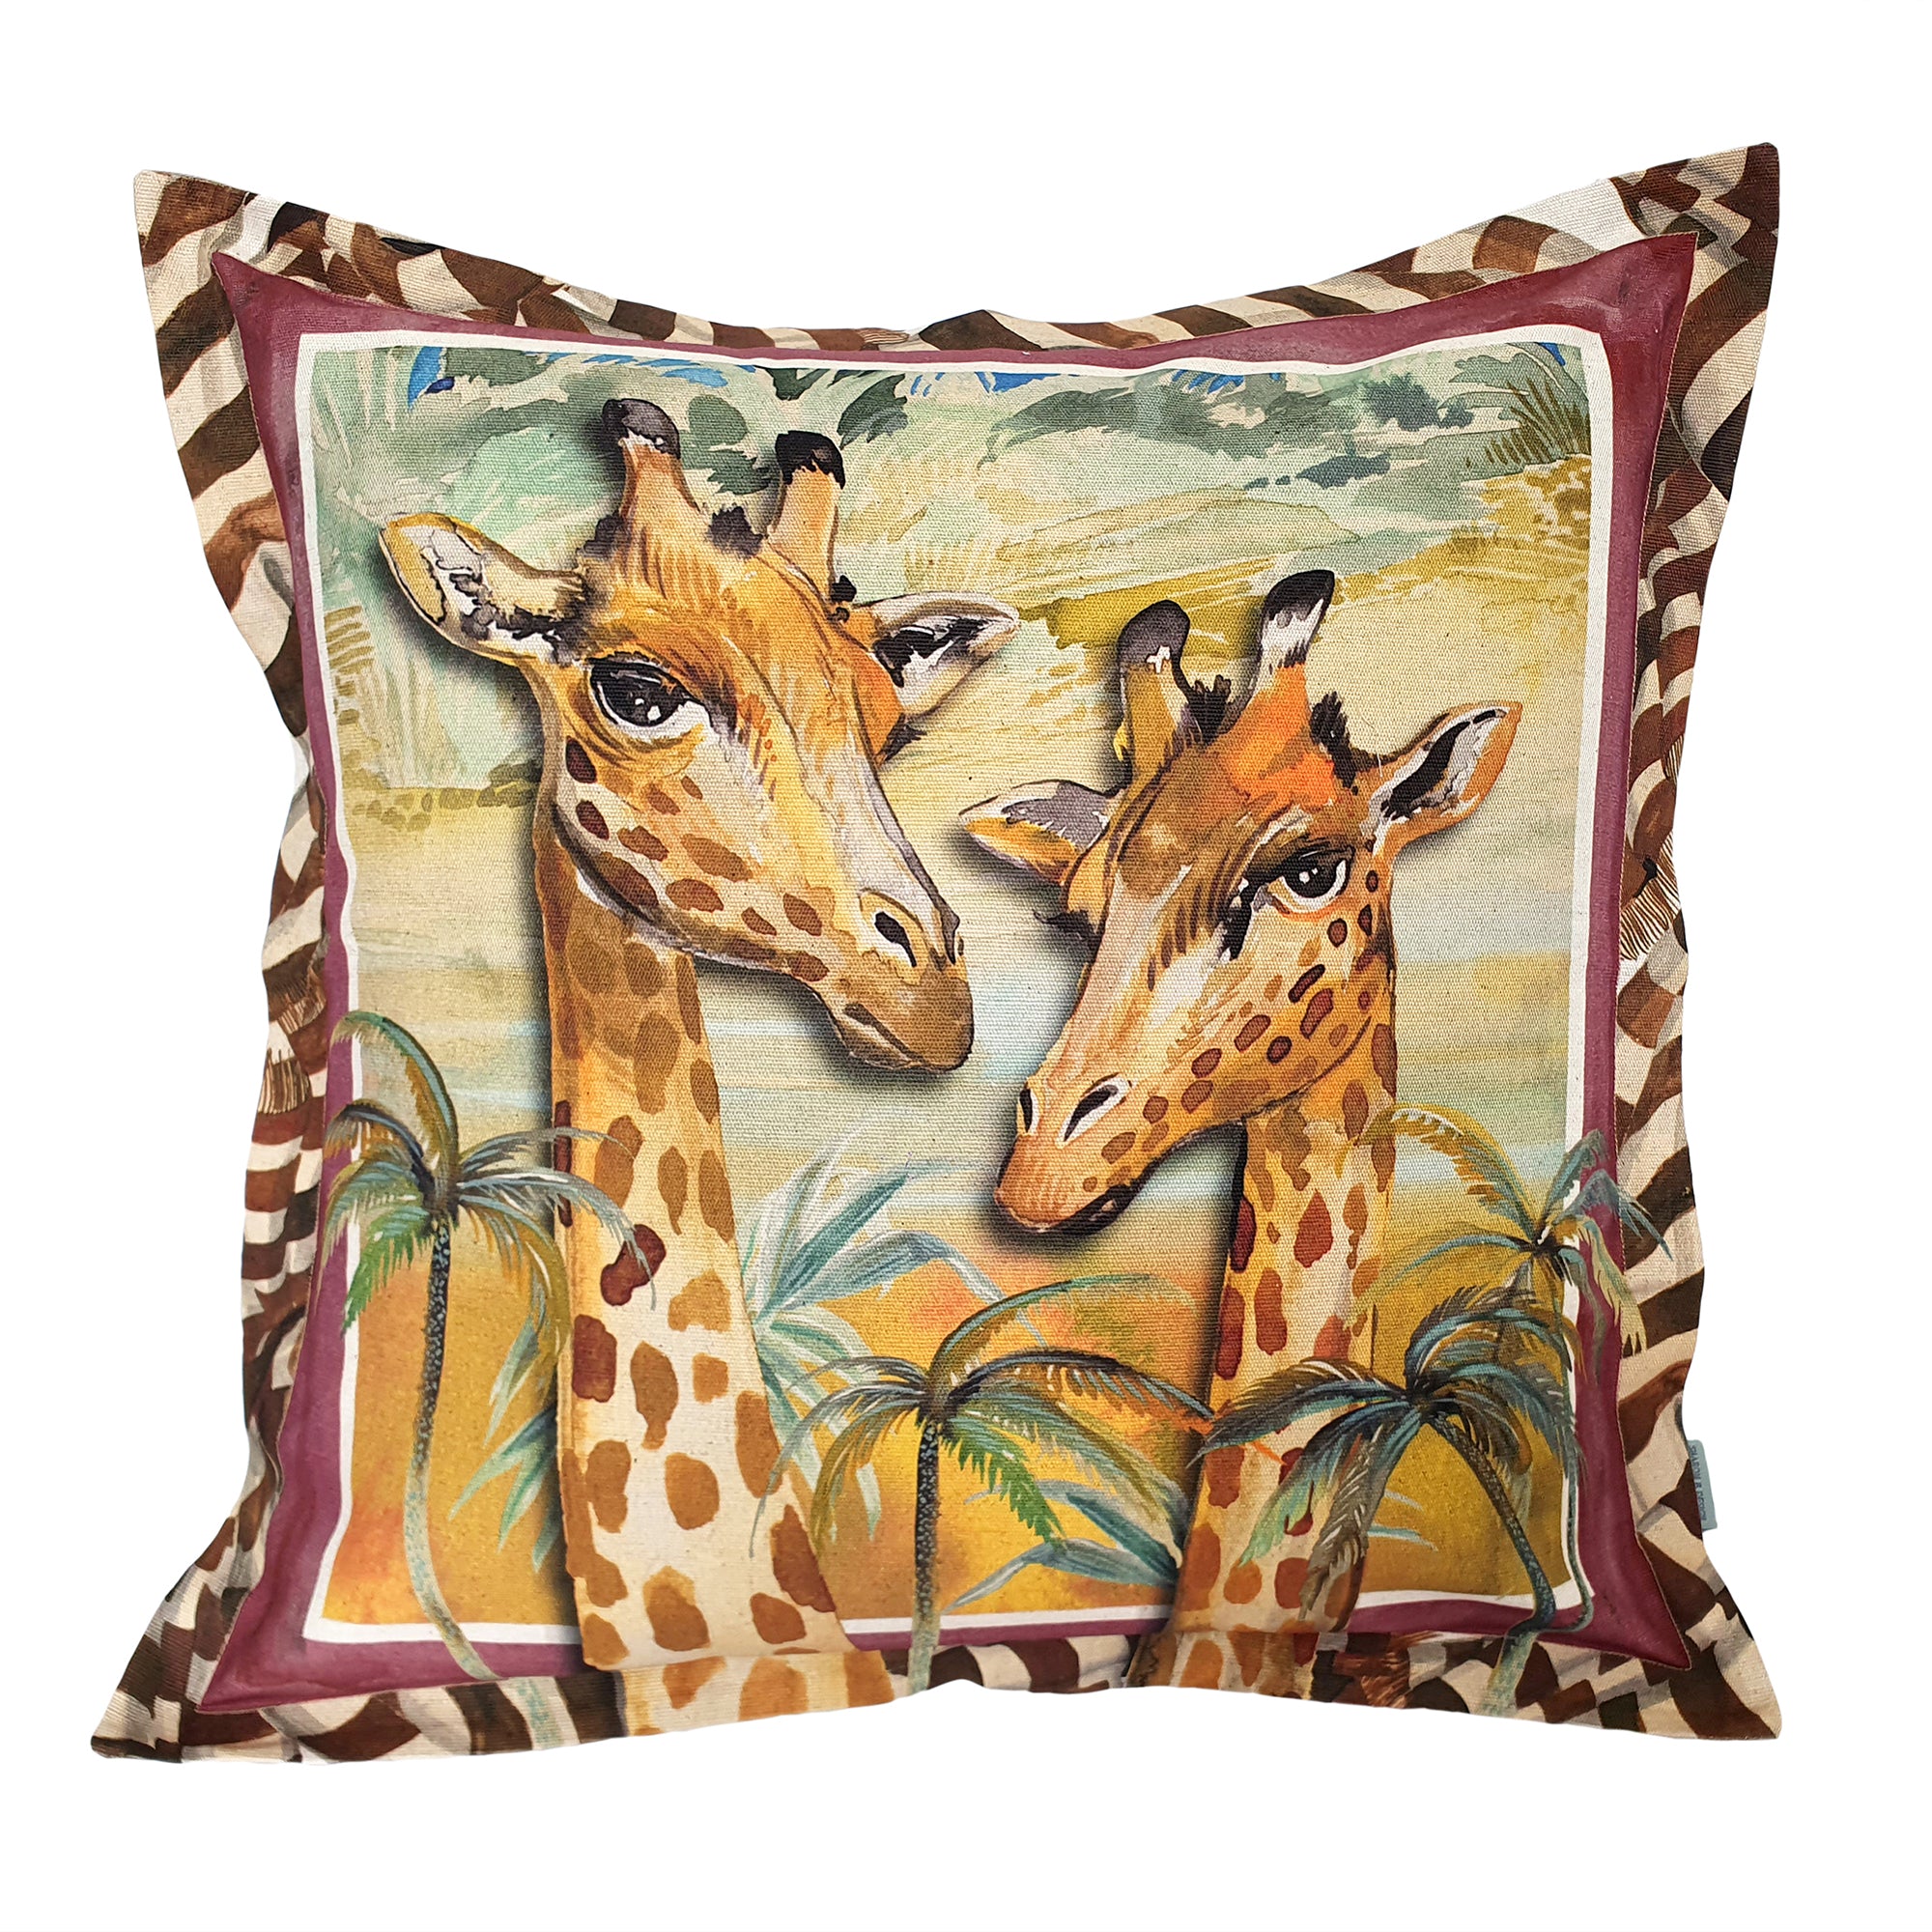 Fiesta Giraffe Cushion Cover, Standard, Cotton-Linen Blend